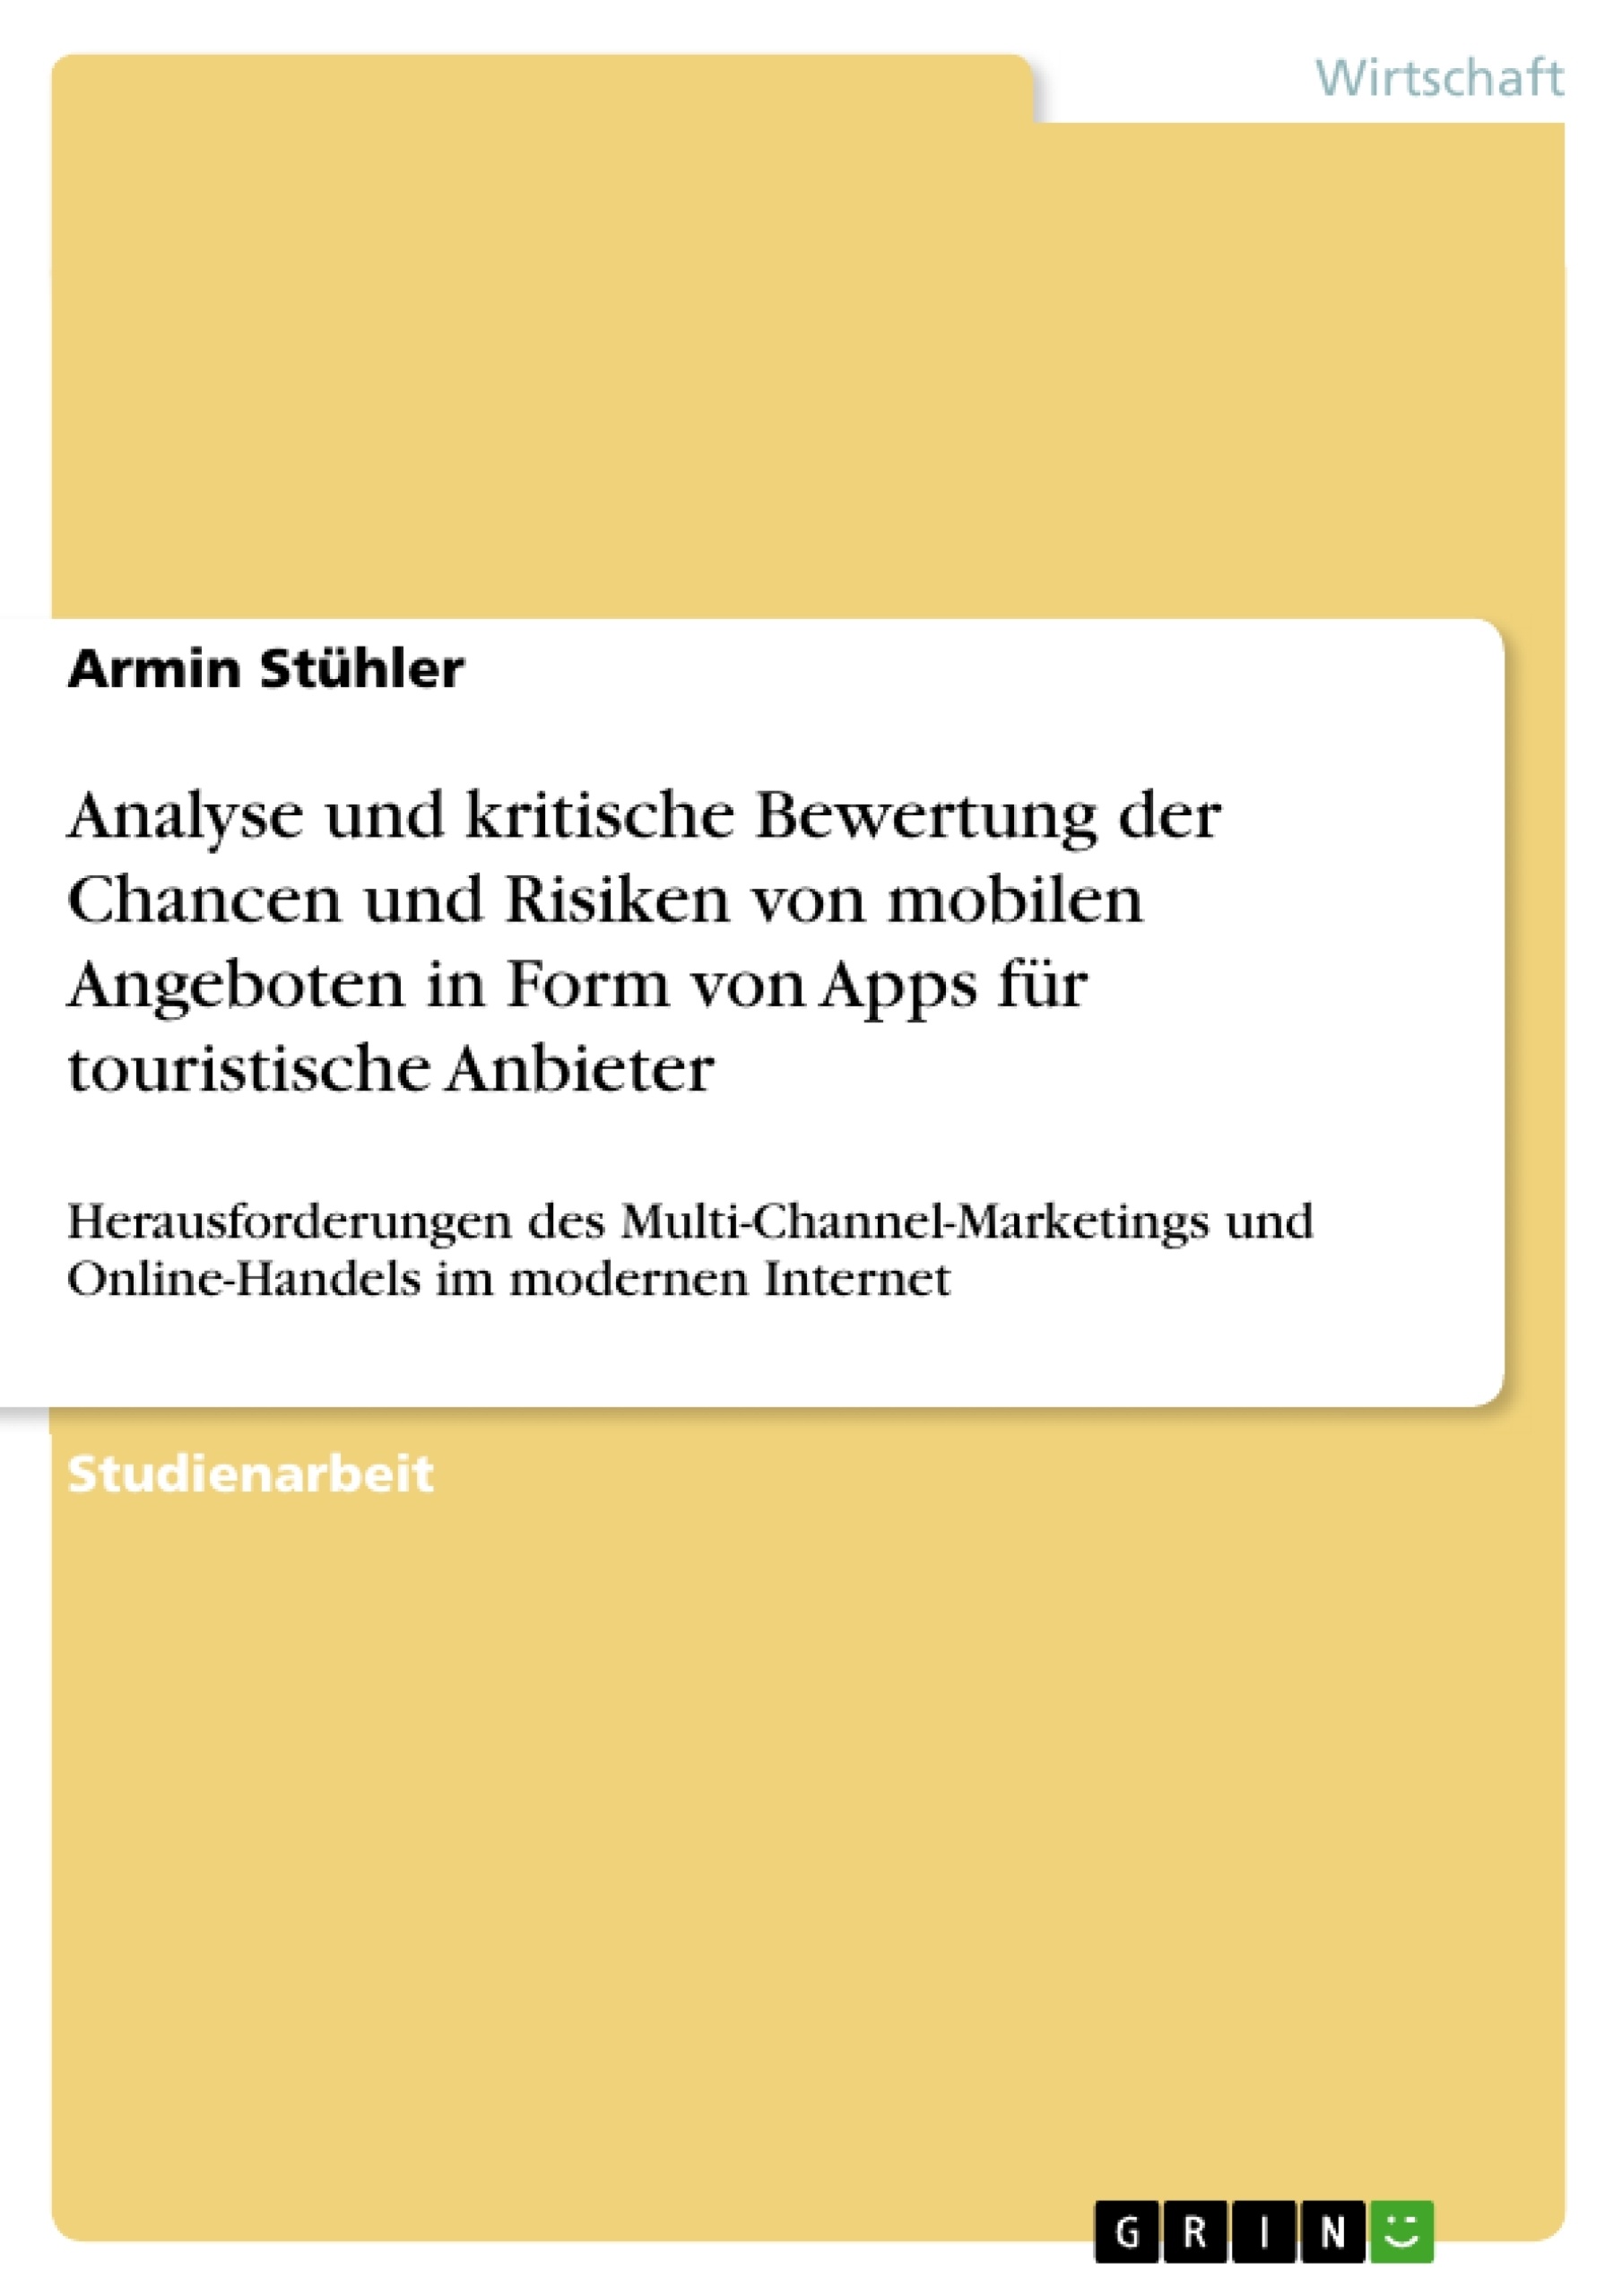 Titre: Analyse und kritische Bewertung der Chancen und Risiken von mobilen Angeboten in Form von Apps für touristische Anbieter